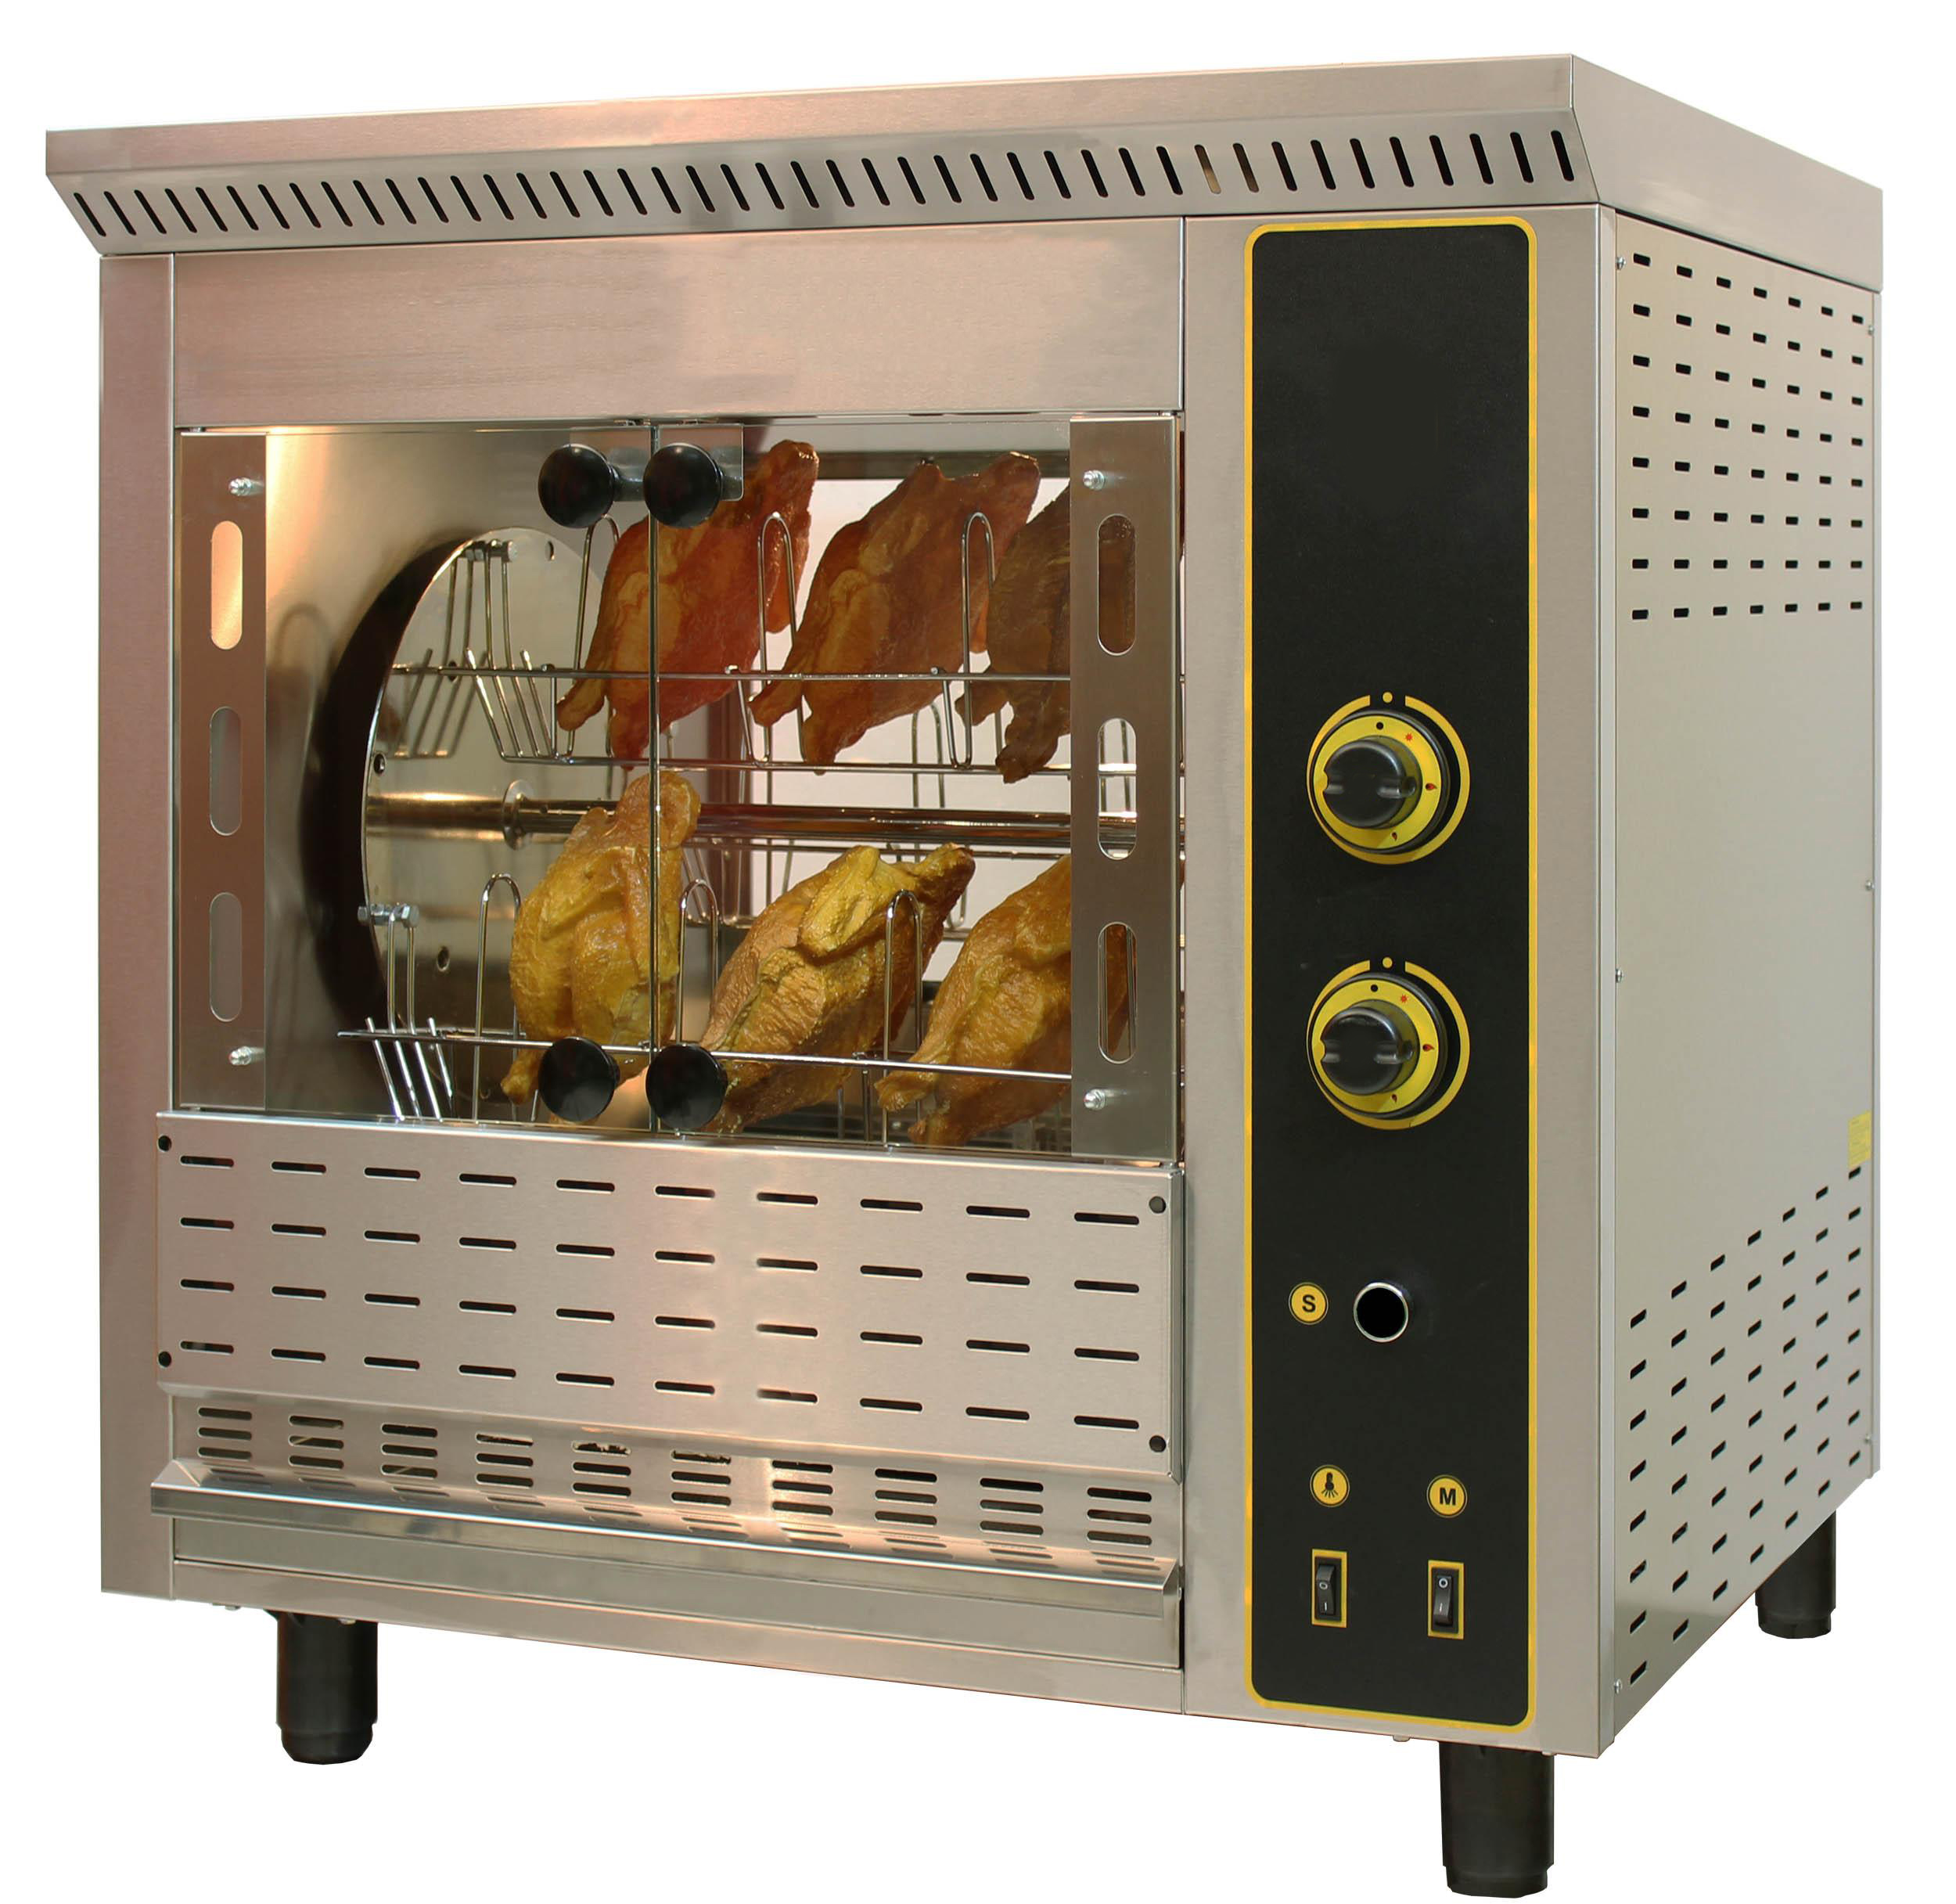 Gastronomie Gas Hähnchengrill Maschine mit Beleuchtung 1 Spieß für 3 Hähnchen 